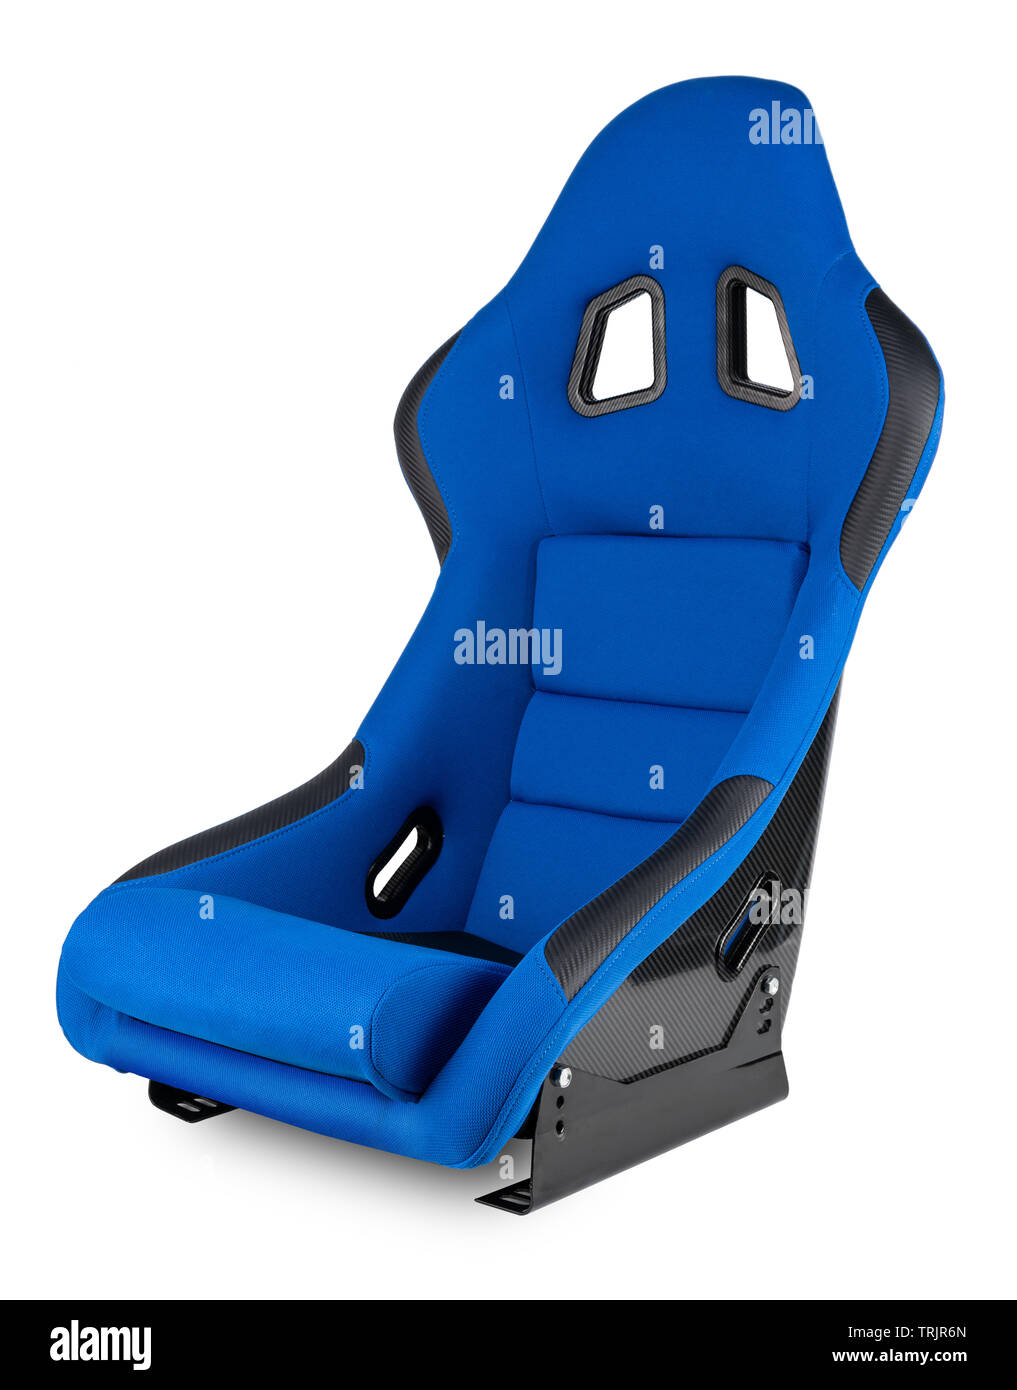 Blau Schwarz carbon Motorsport race car Tuning sim racing Schalensitz auf weißem Hintergrund Stockfoto